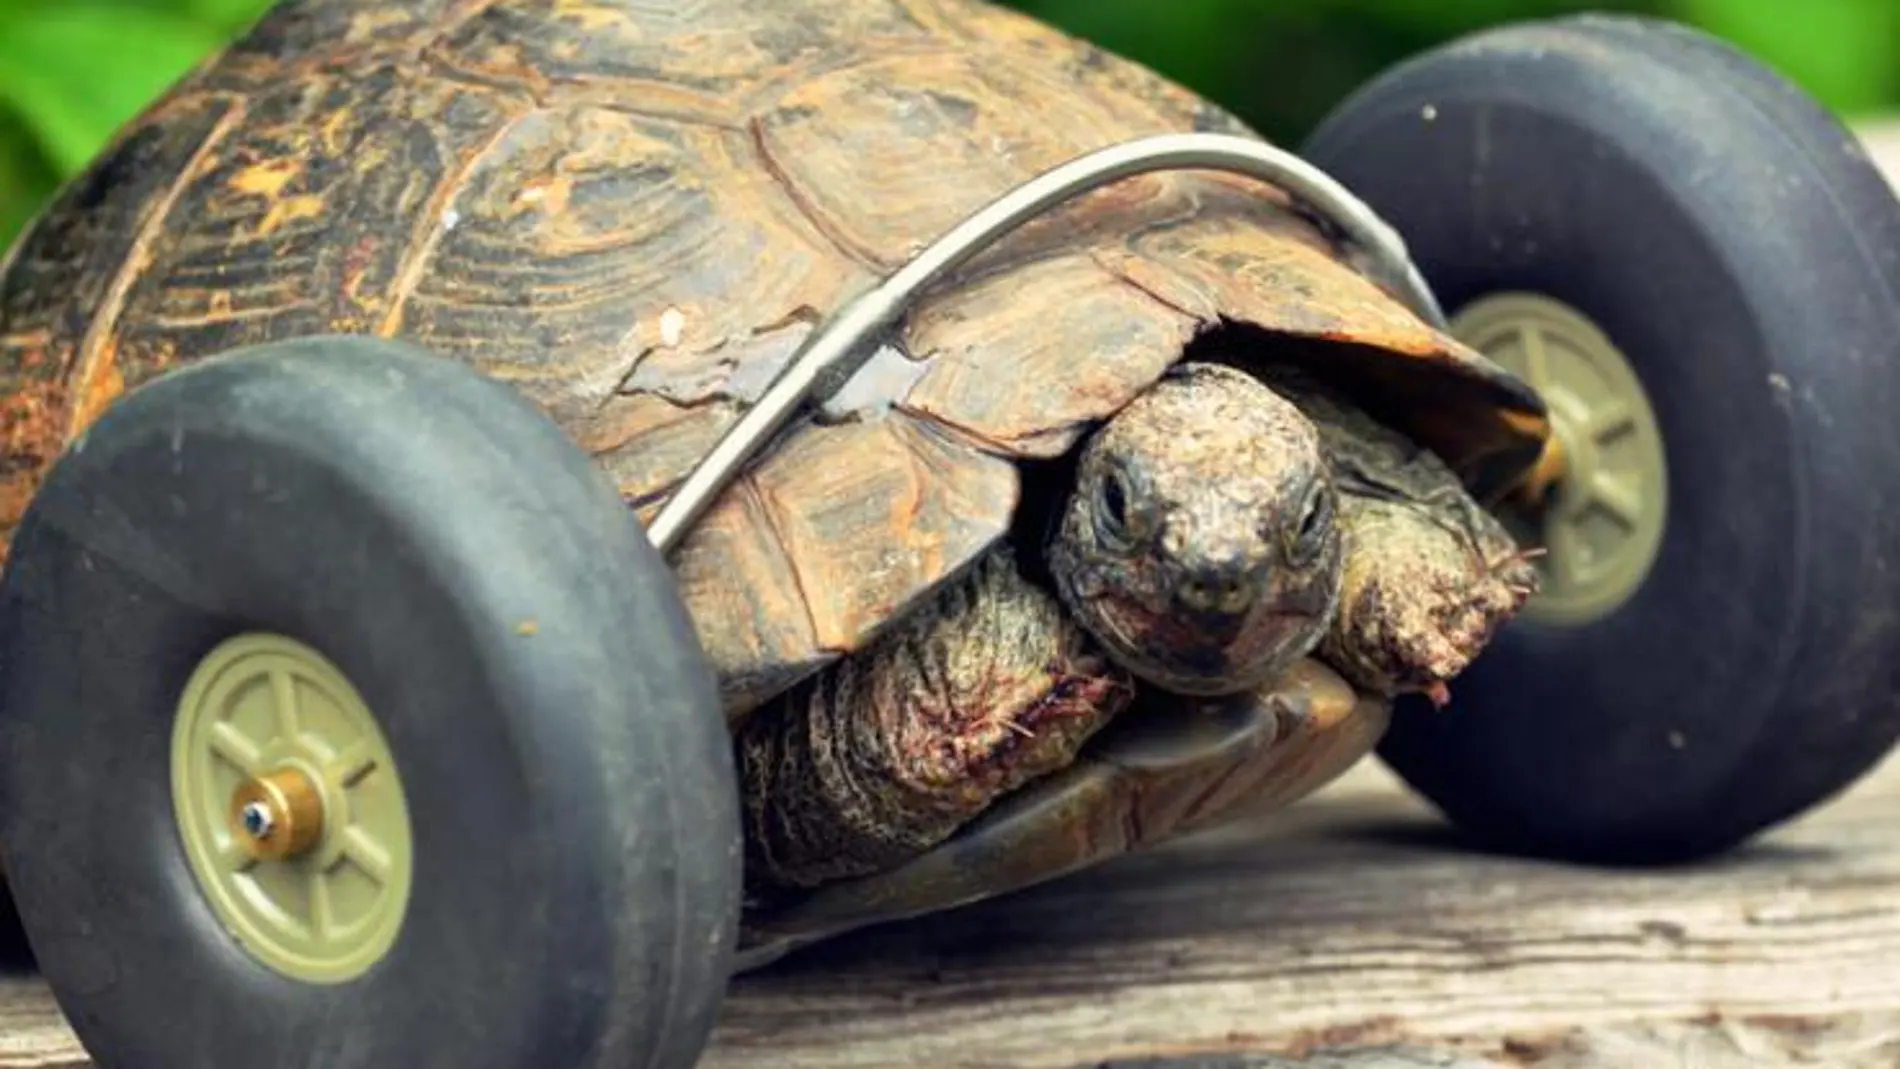 Una tortuga vuelve a caminar gracias a unas ruedas implantadas en sus patas